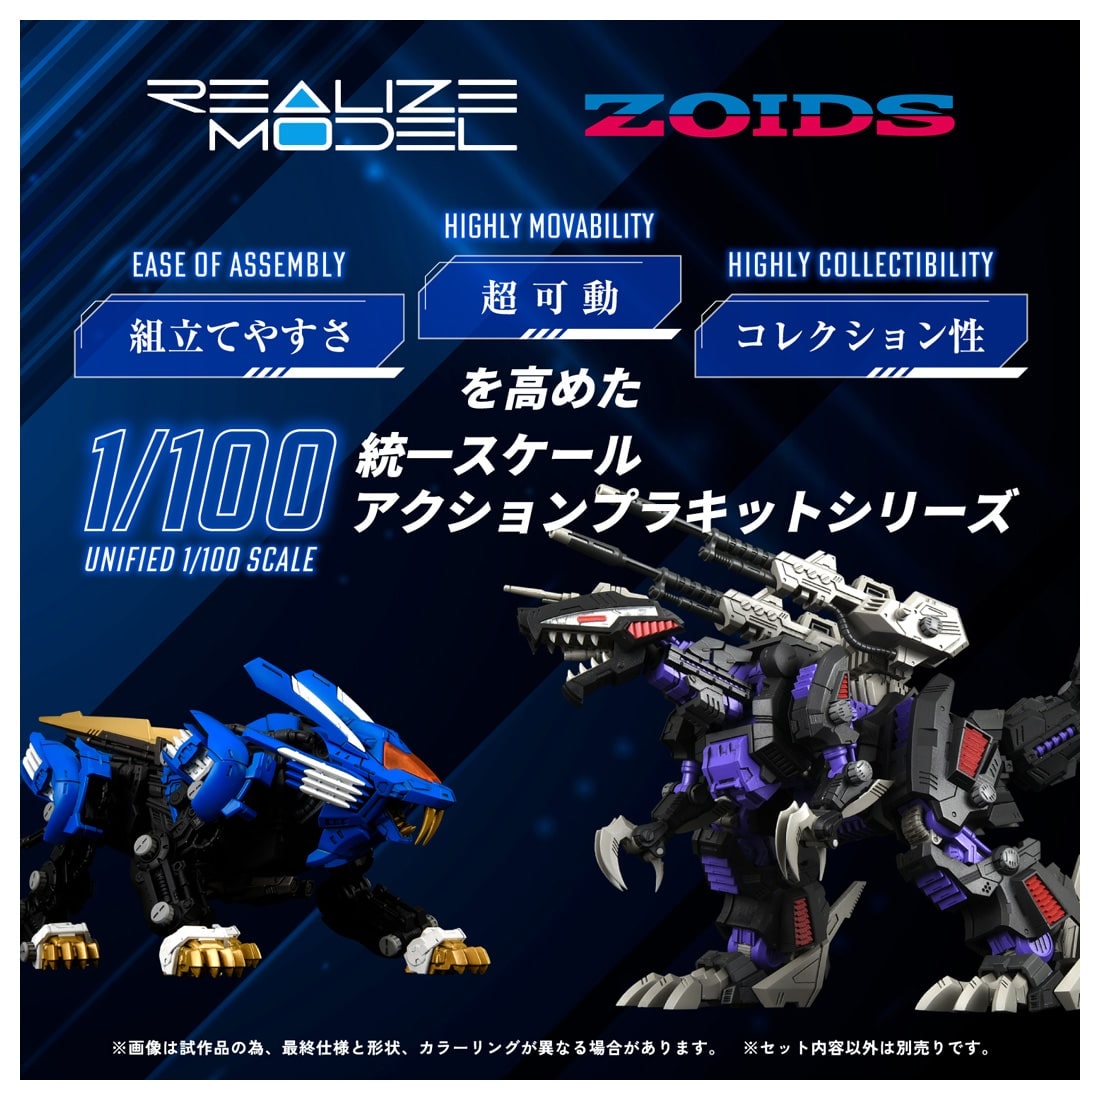 リアライズモデル ゾイド『RMZ-001 ブレードライガー』ZOIDS 1/100 プラモデル-003